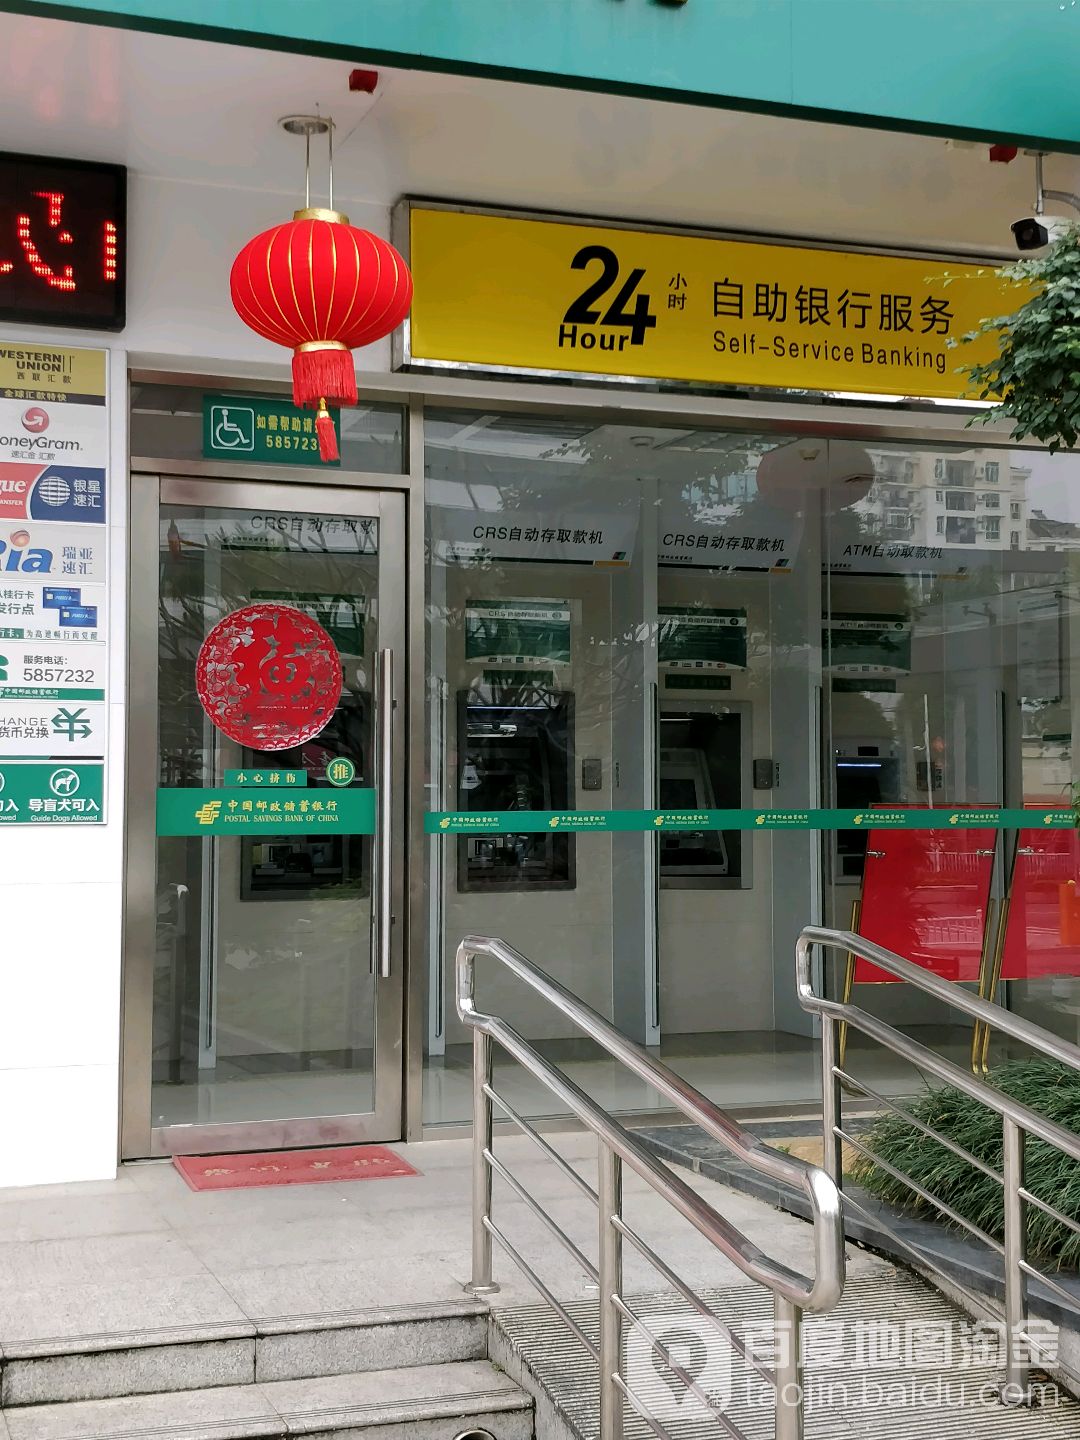 中國郵政儲蓄銀行24小時自助銀行(南寧市分行營業部)